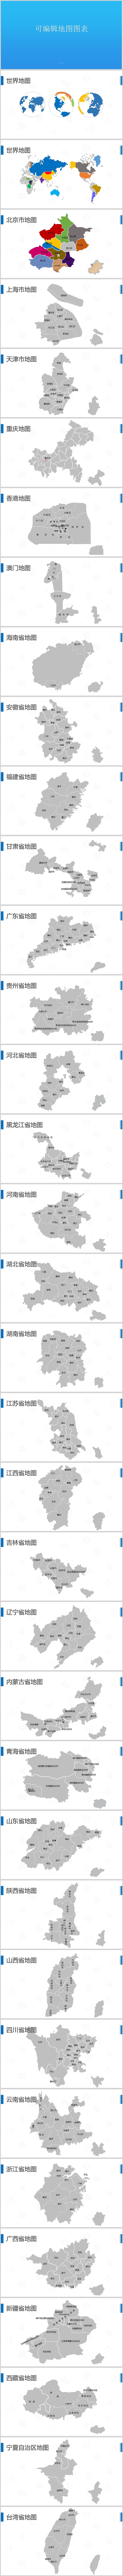 可编辑地图世界地图中国地图各省地图含台湾